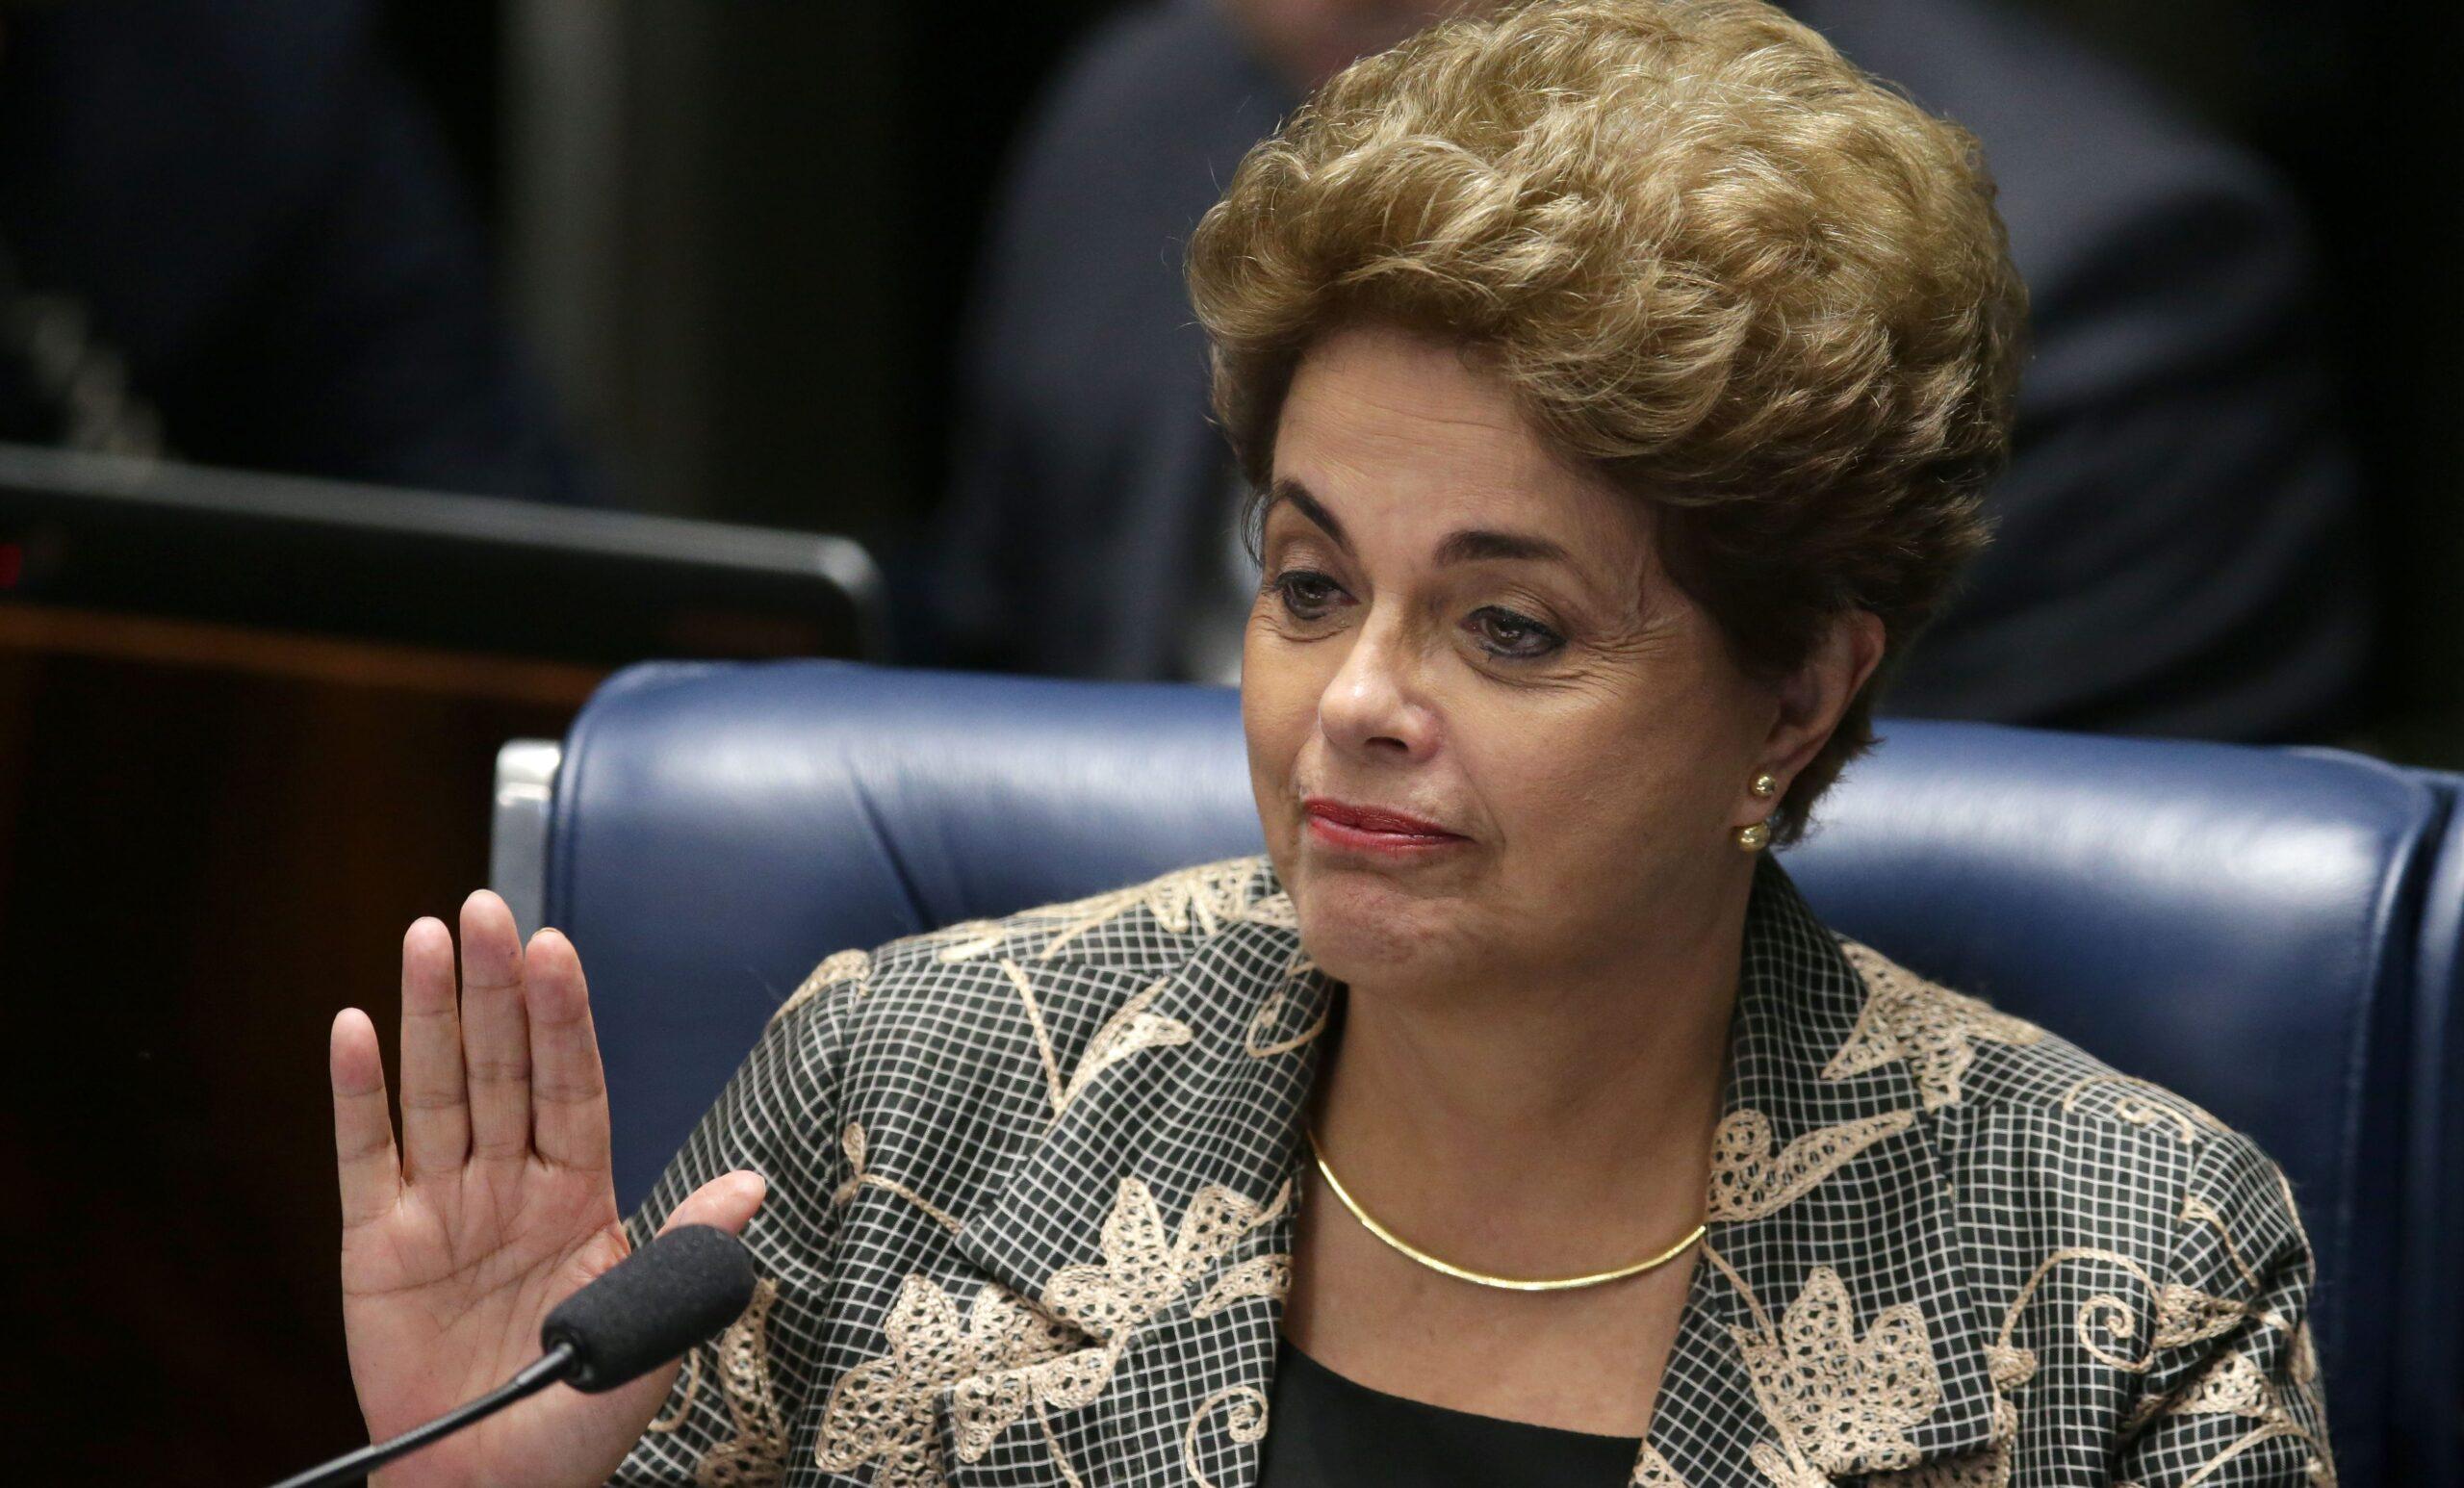 El senado destituye a Dilma Rousseff como presidenta de Brasil